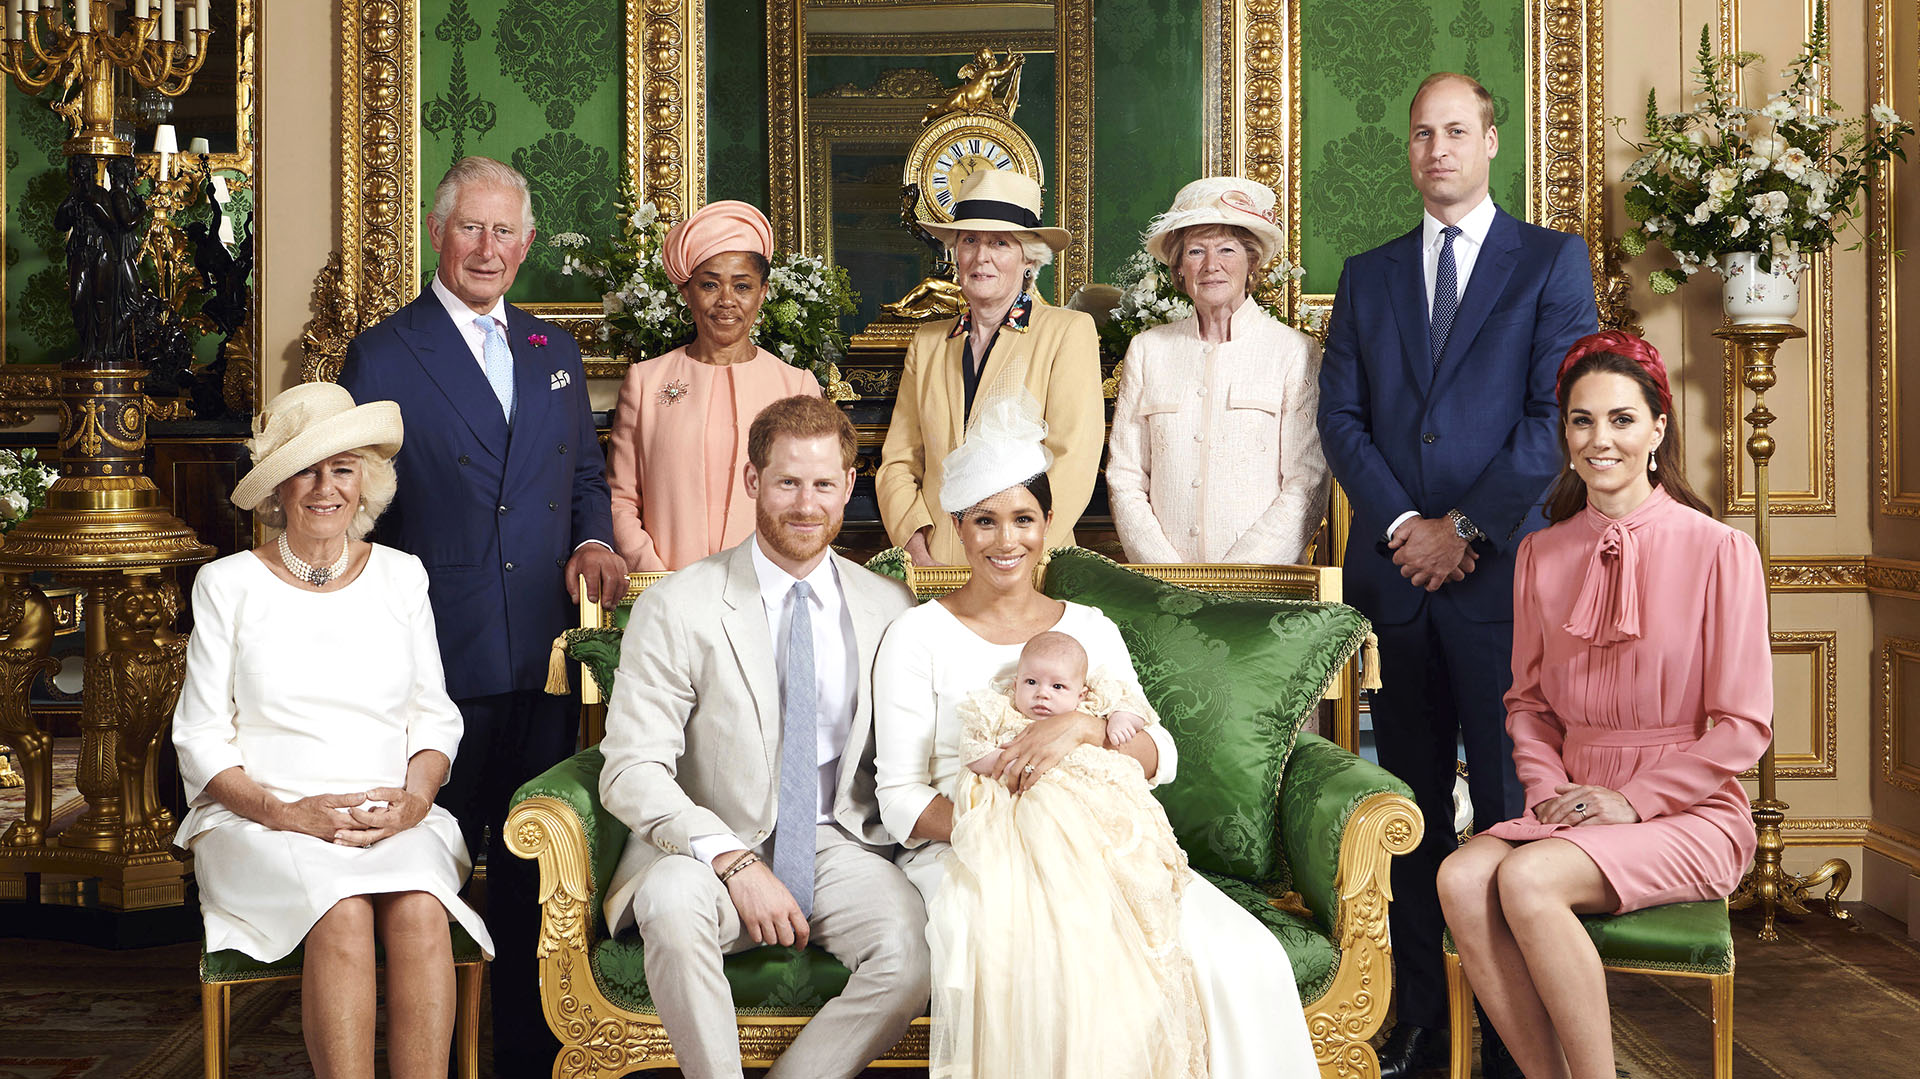 El rey Carlos reunido con sus hijos, nueras y Camilla, en el bautismo de Archie, el primogénito de Harry (Chris Allerton/©SussexRoyal via AP)